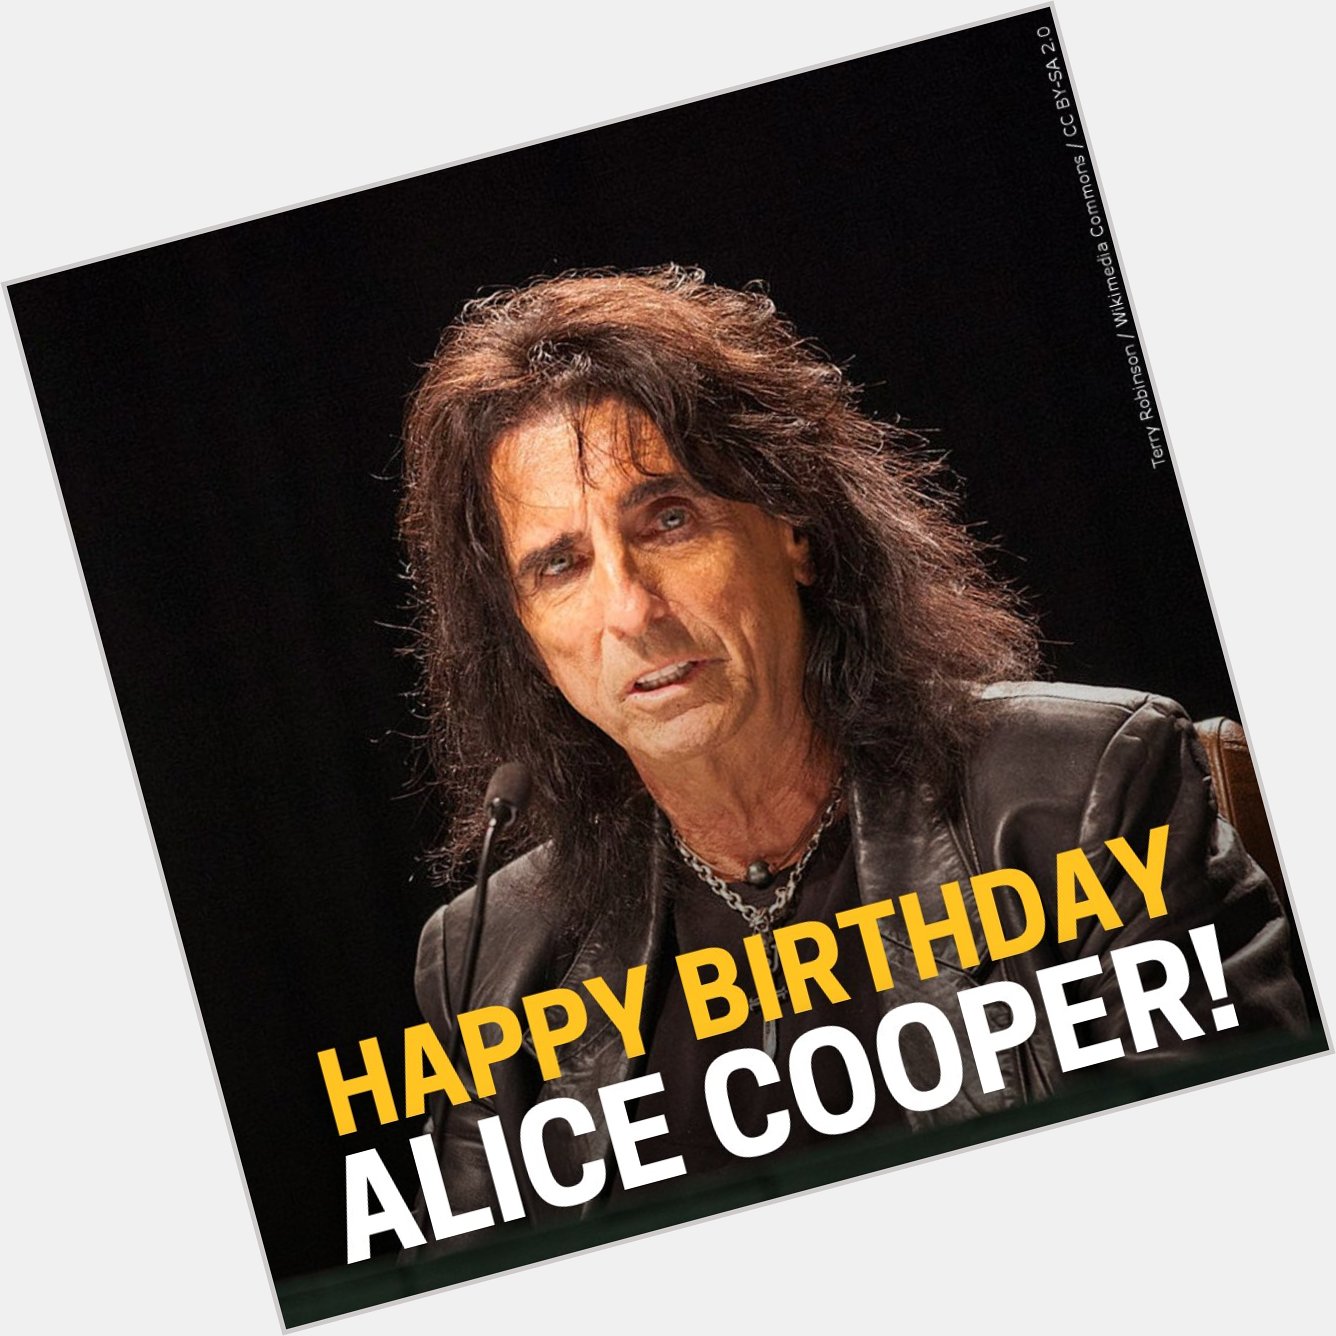 Happy birthday Alice Cooper! 